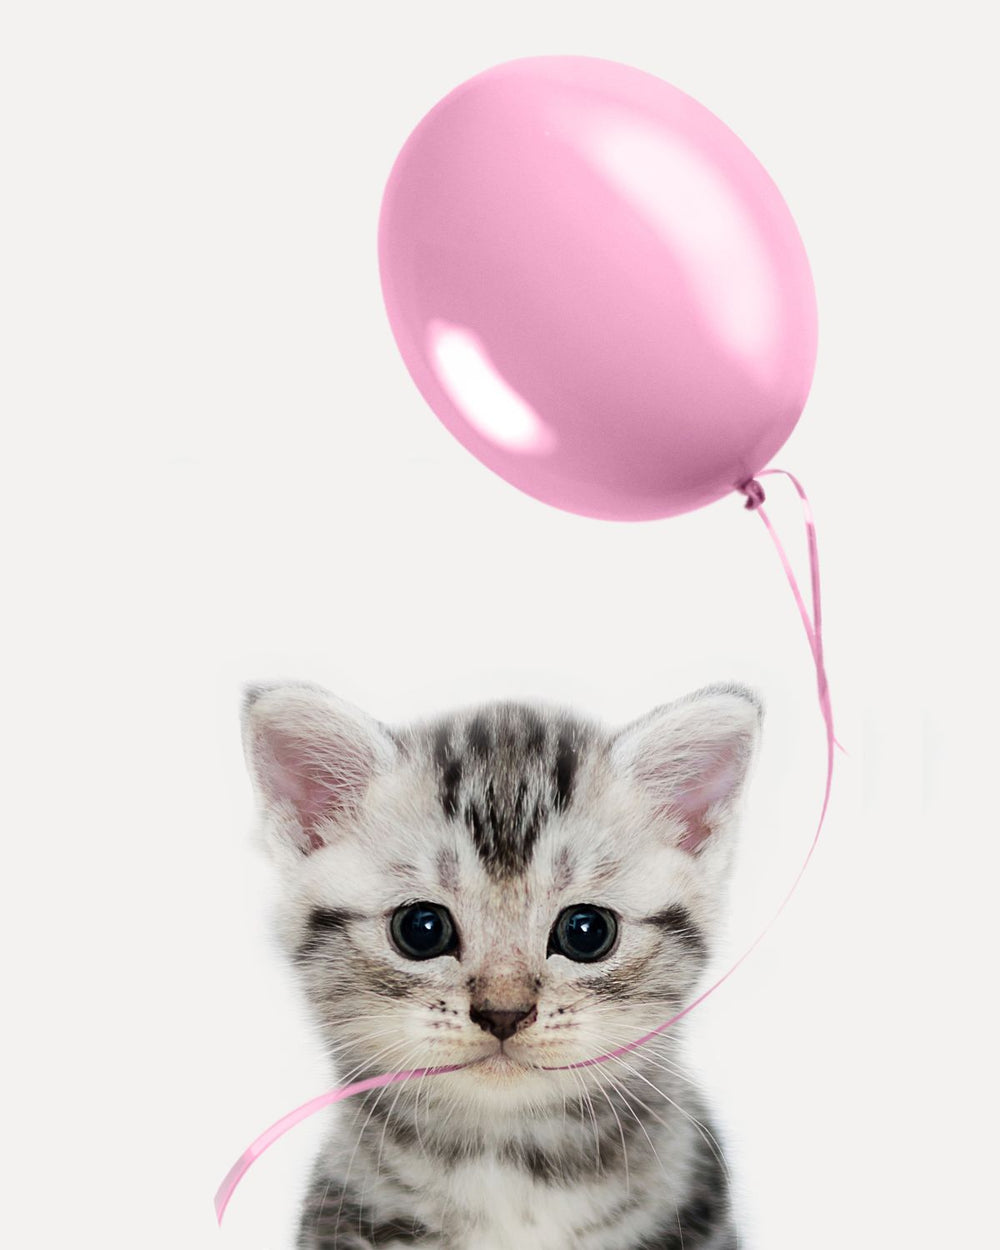 Kitten And Pink Balloon